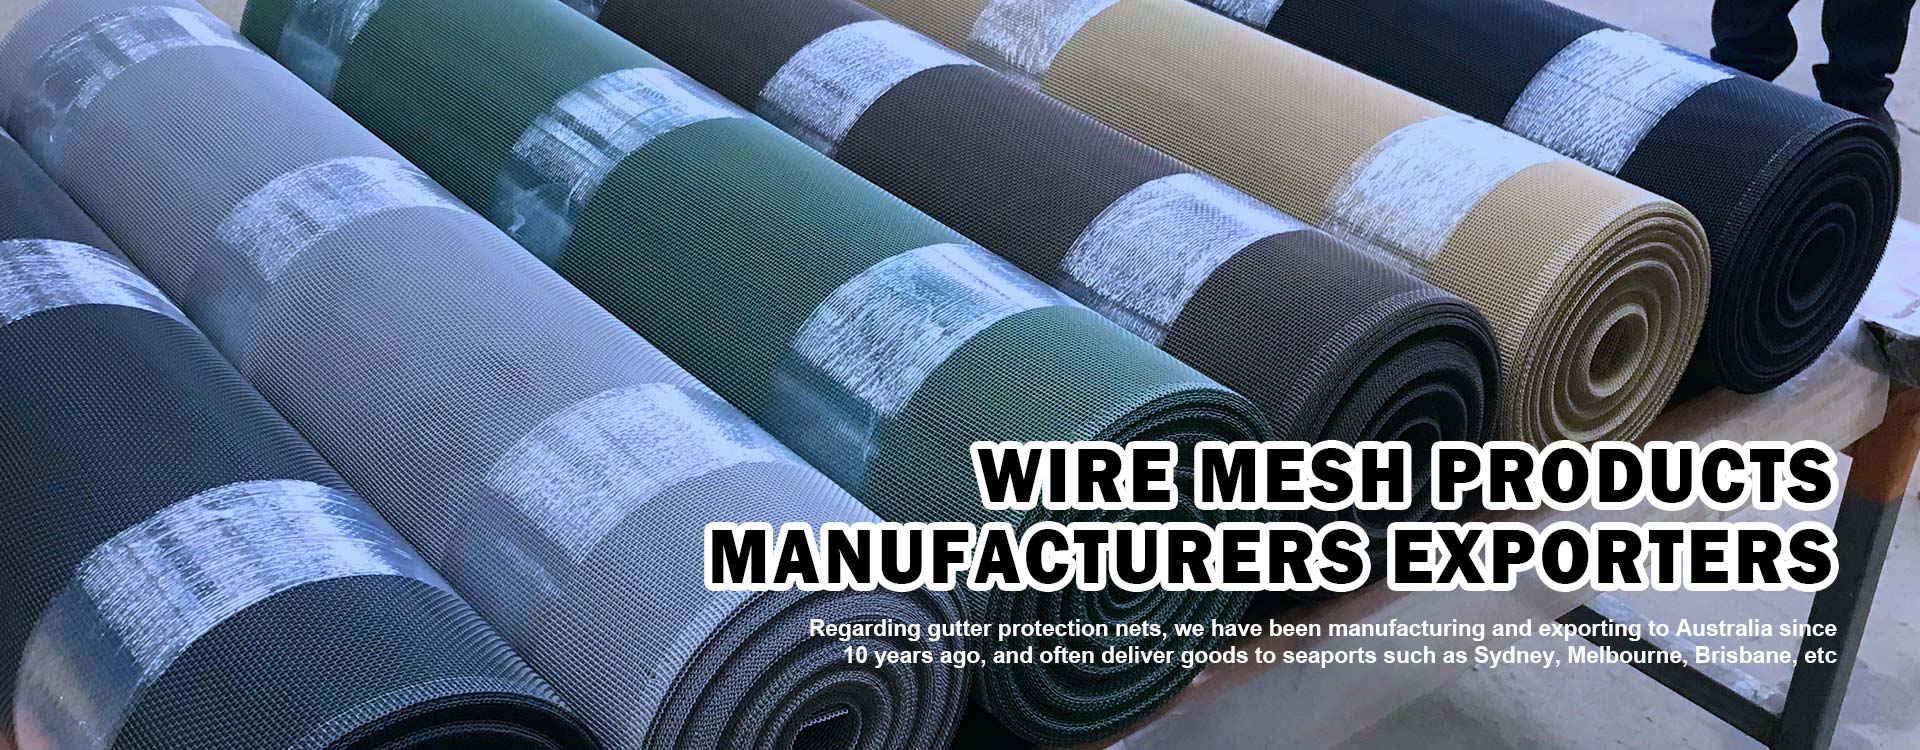 Anping Baojiao Wire Mesh Product Co.,Ltd